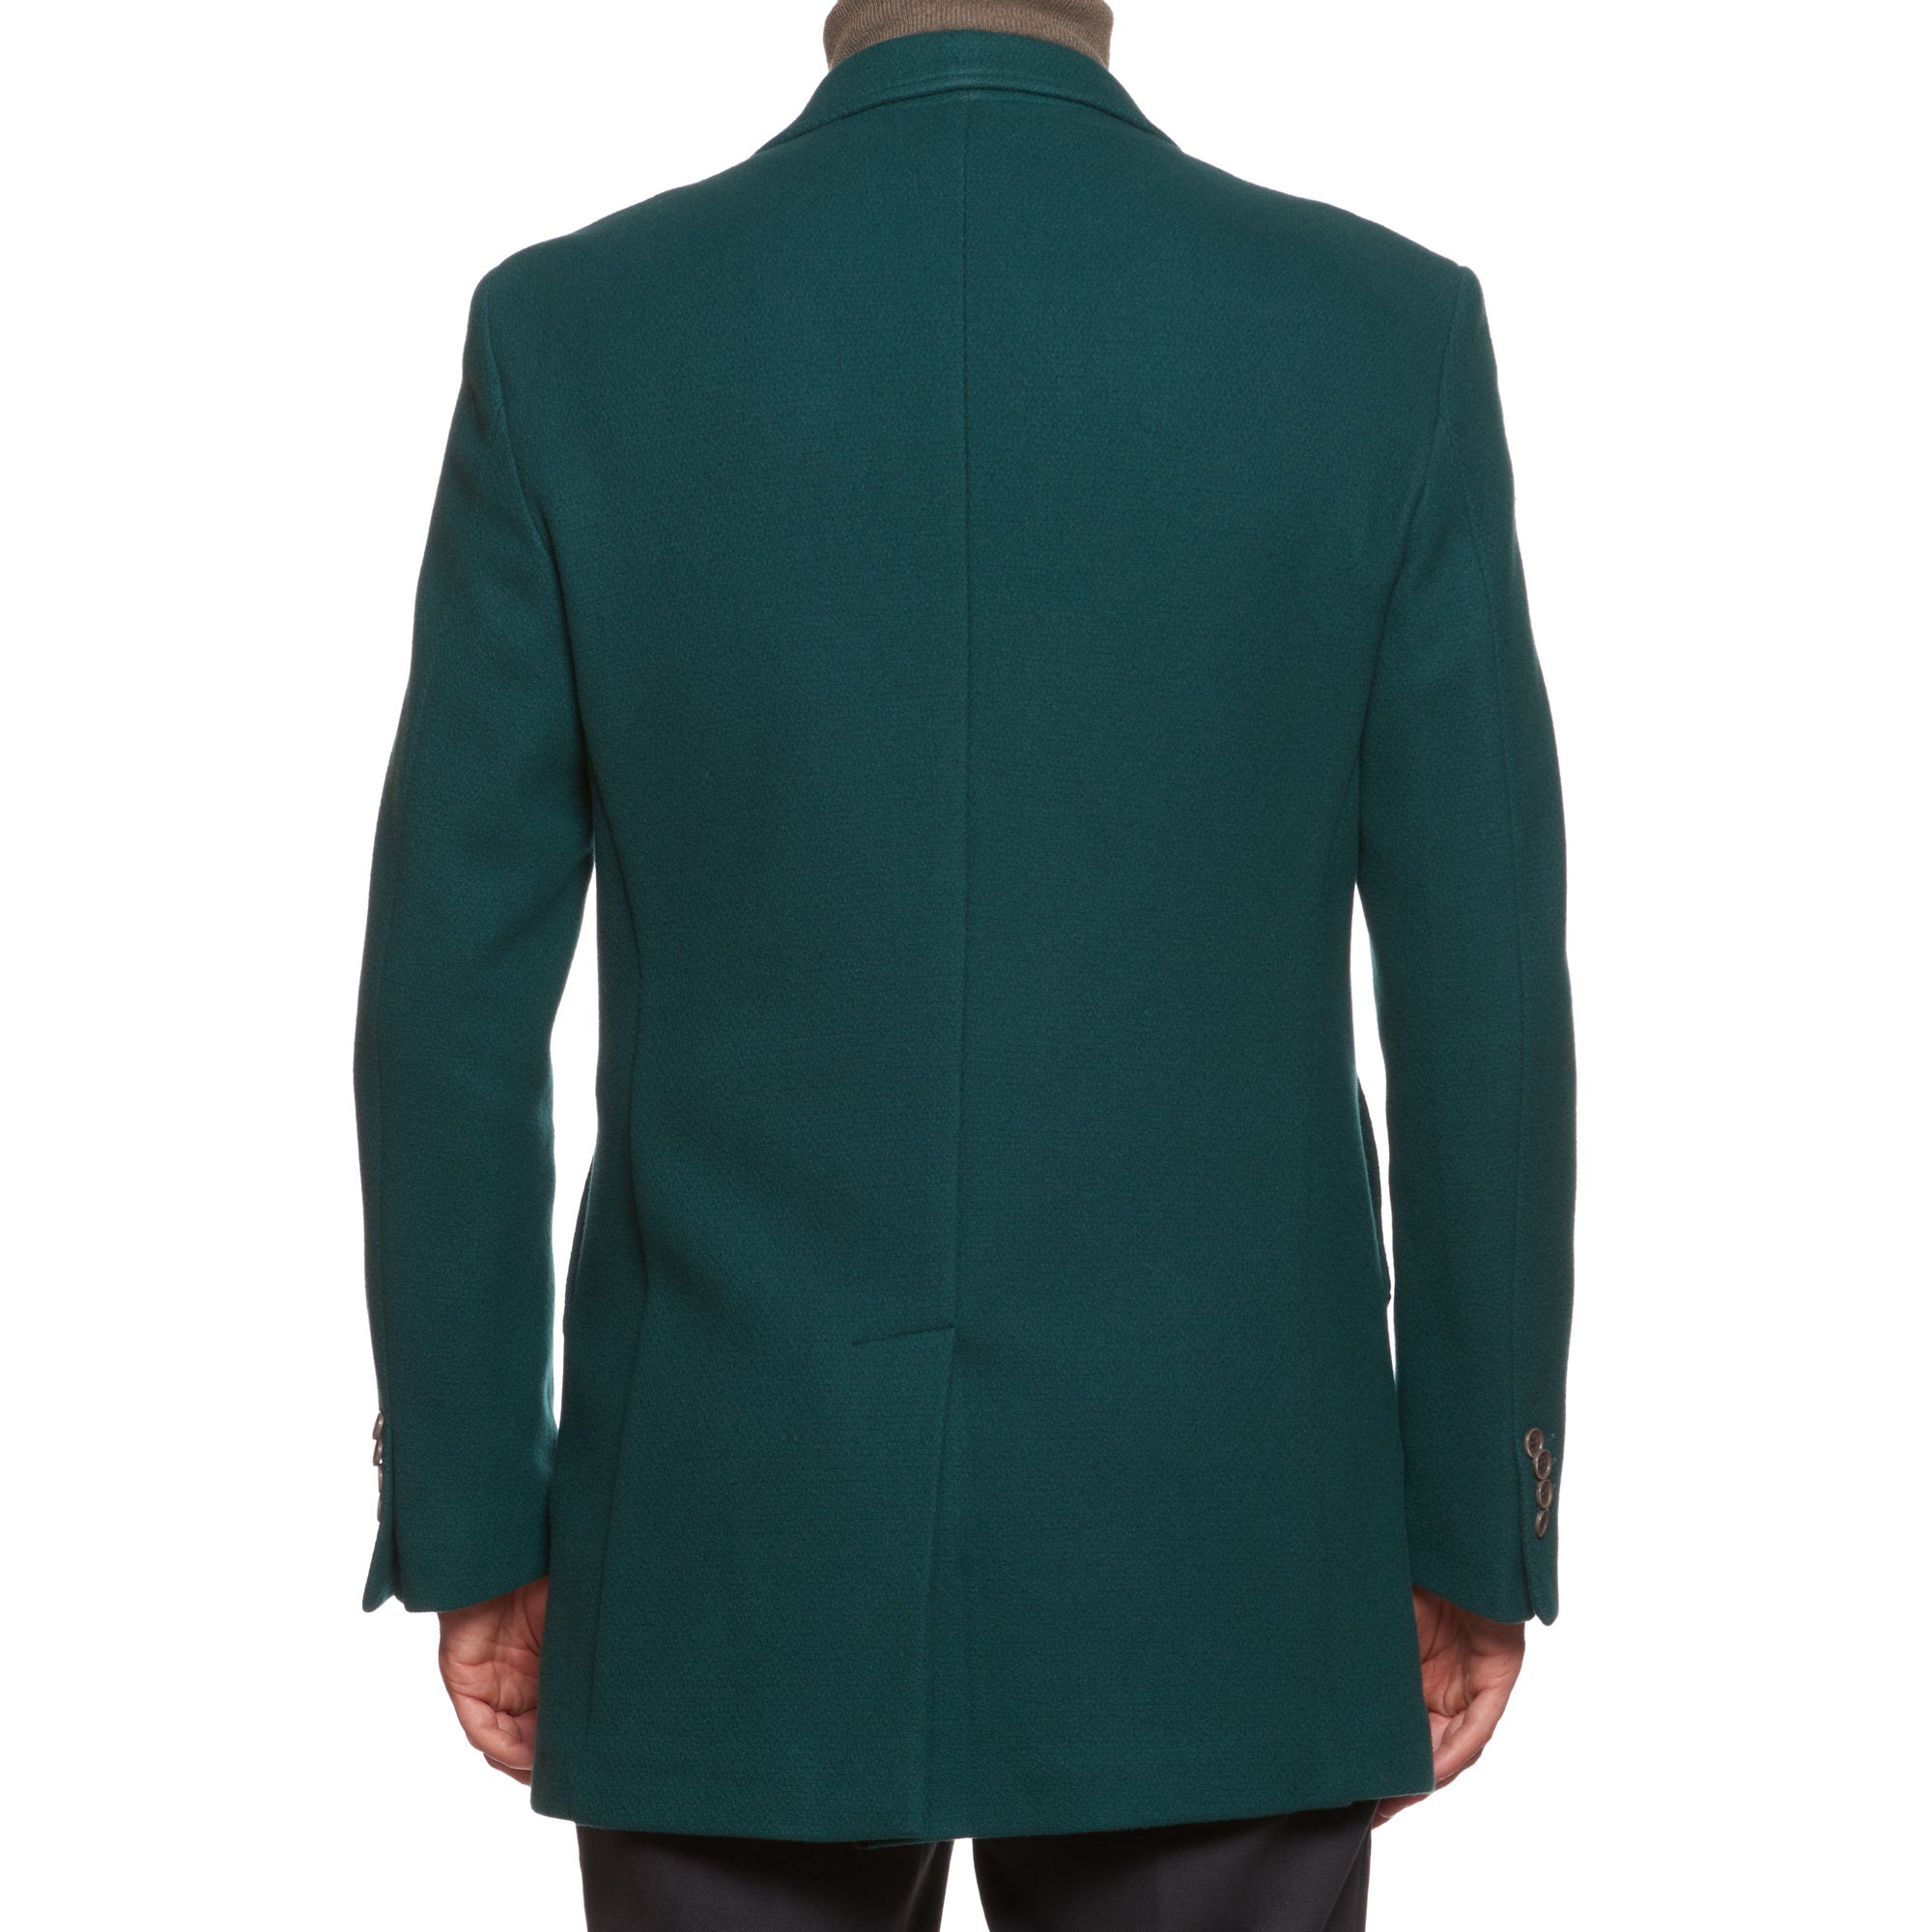 VINCENZO PALUMBO Napoli Green Wool Blend Jacket Coat NEW